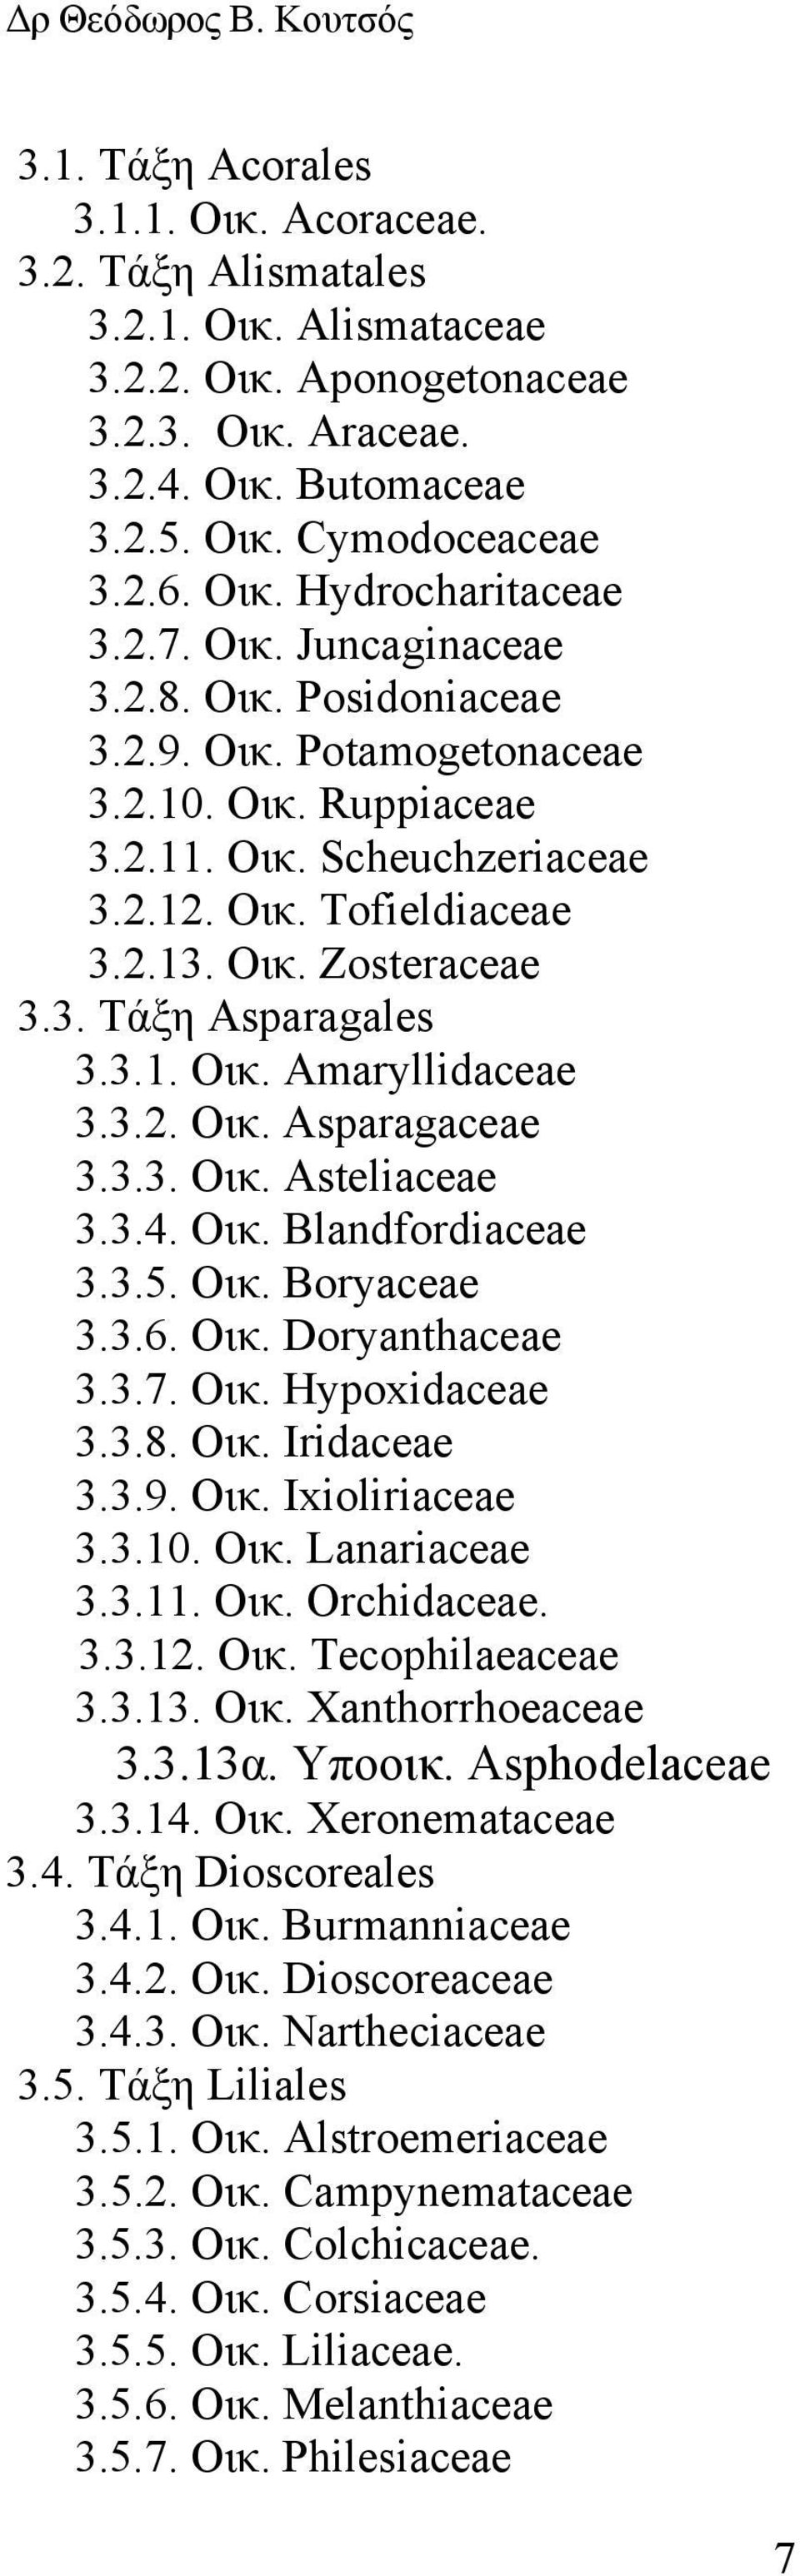 3.1. Οικ. Amaryllidaceae 3.3.2. Οικ. Asparagaceae 3.3.3. Οικ. Asteliaceae 3.3.4. Οικ. Blandfordiaceae 3.3.5. Οικ. Boryaceae 3.3.6. Οικ. Doryanthaceae 3.3.7. Οικ. Hypoxidaceae 3.3.8. Οικ. Iridaceae 3.